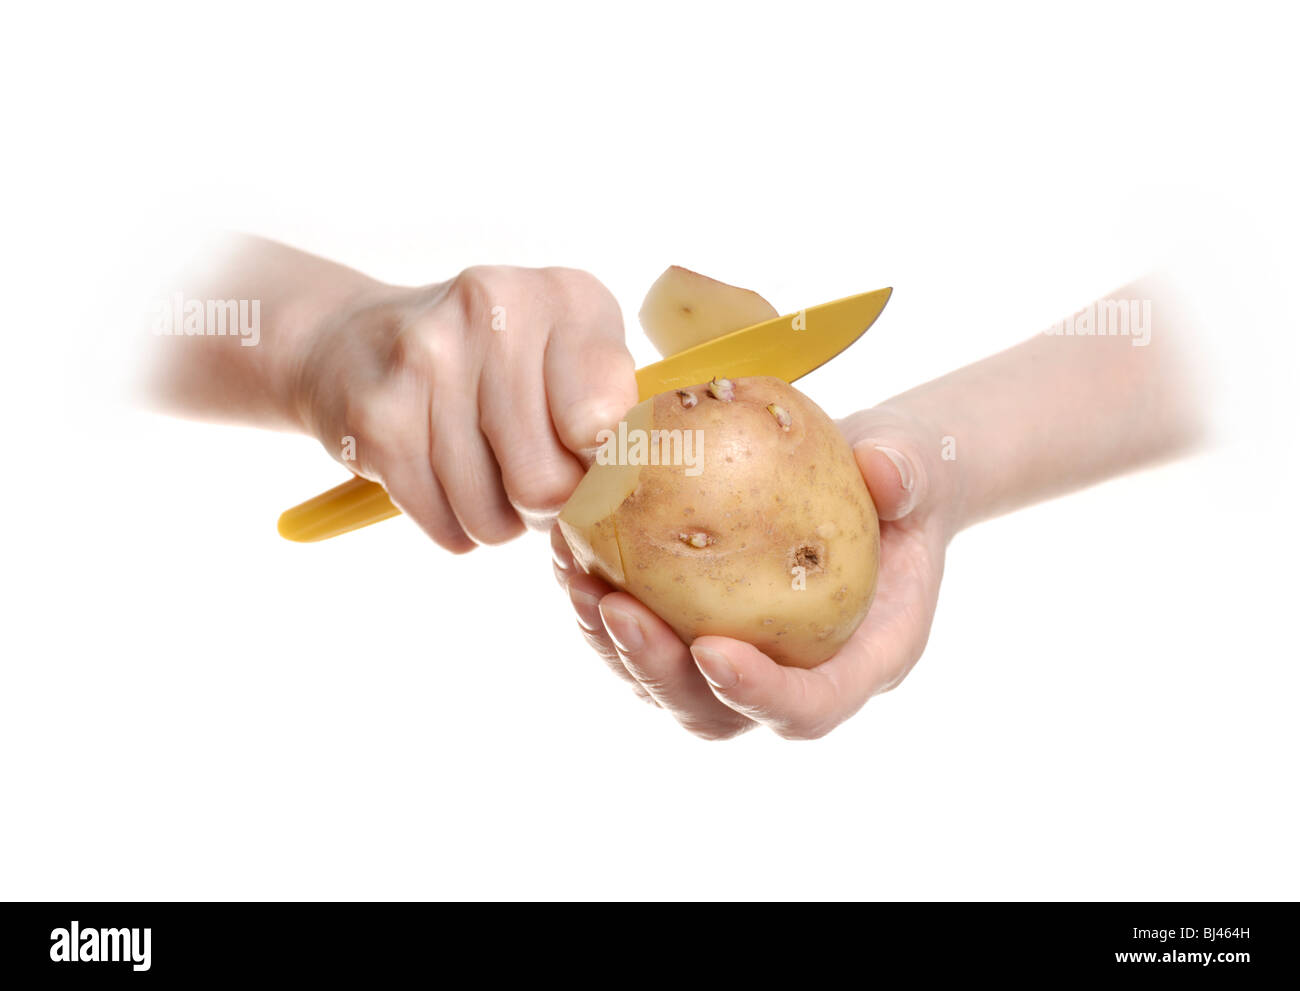 Peeling a potato Stock Photo